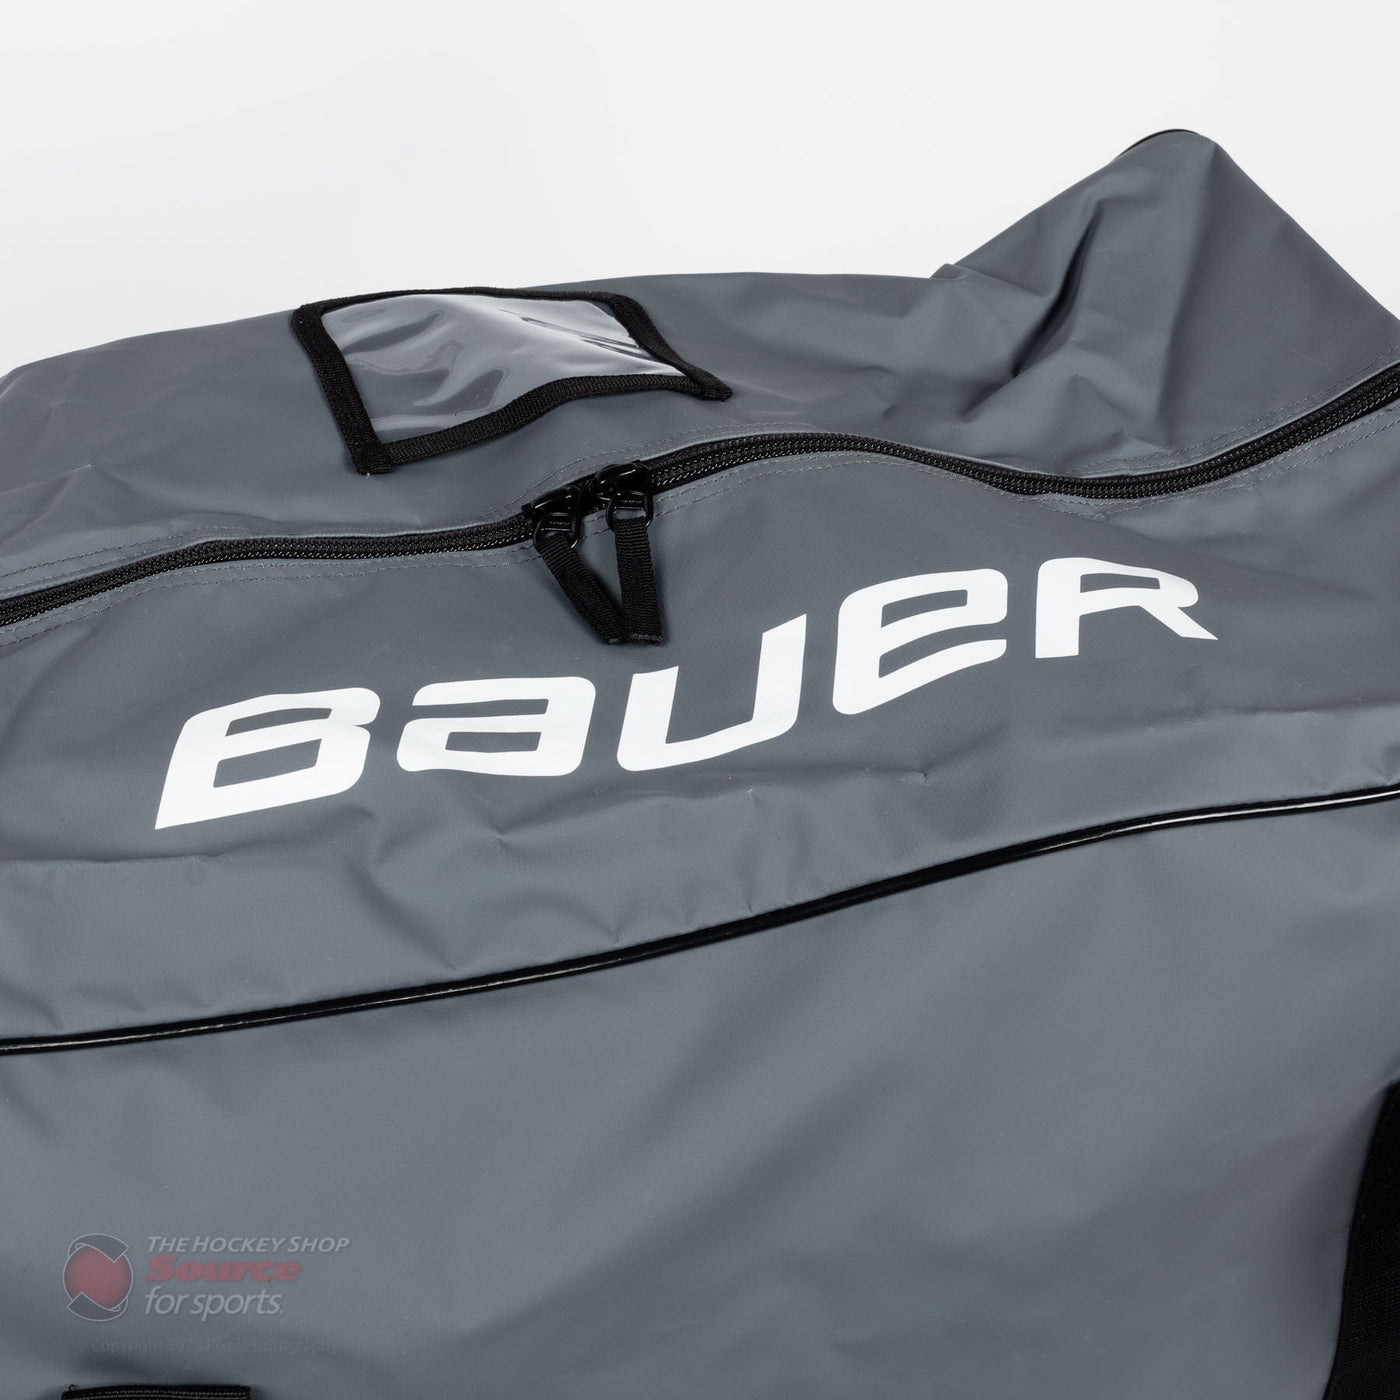 Bauer Pro Junior Carry Hockey Bag